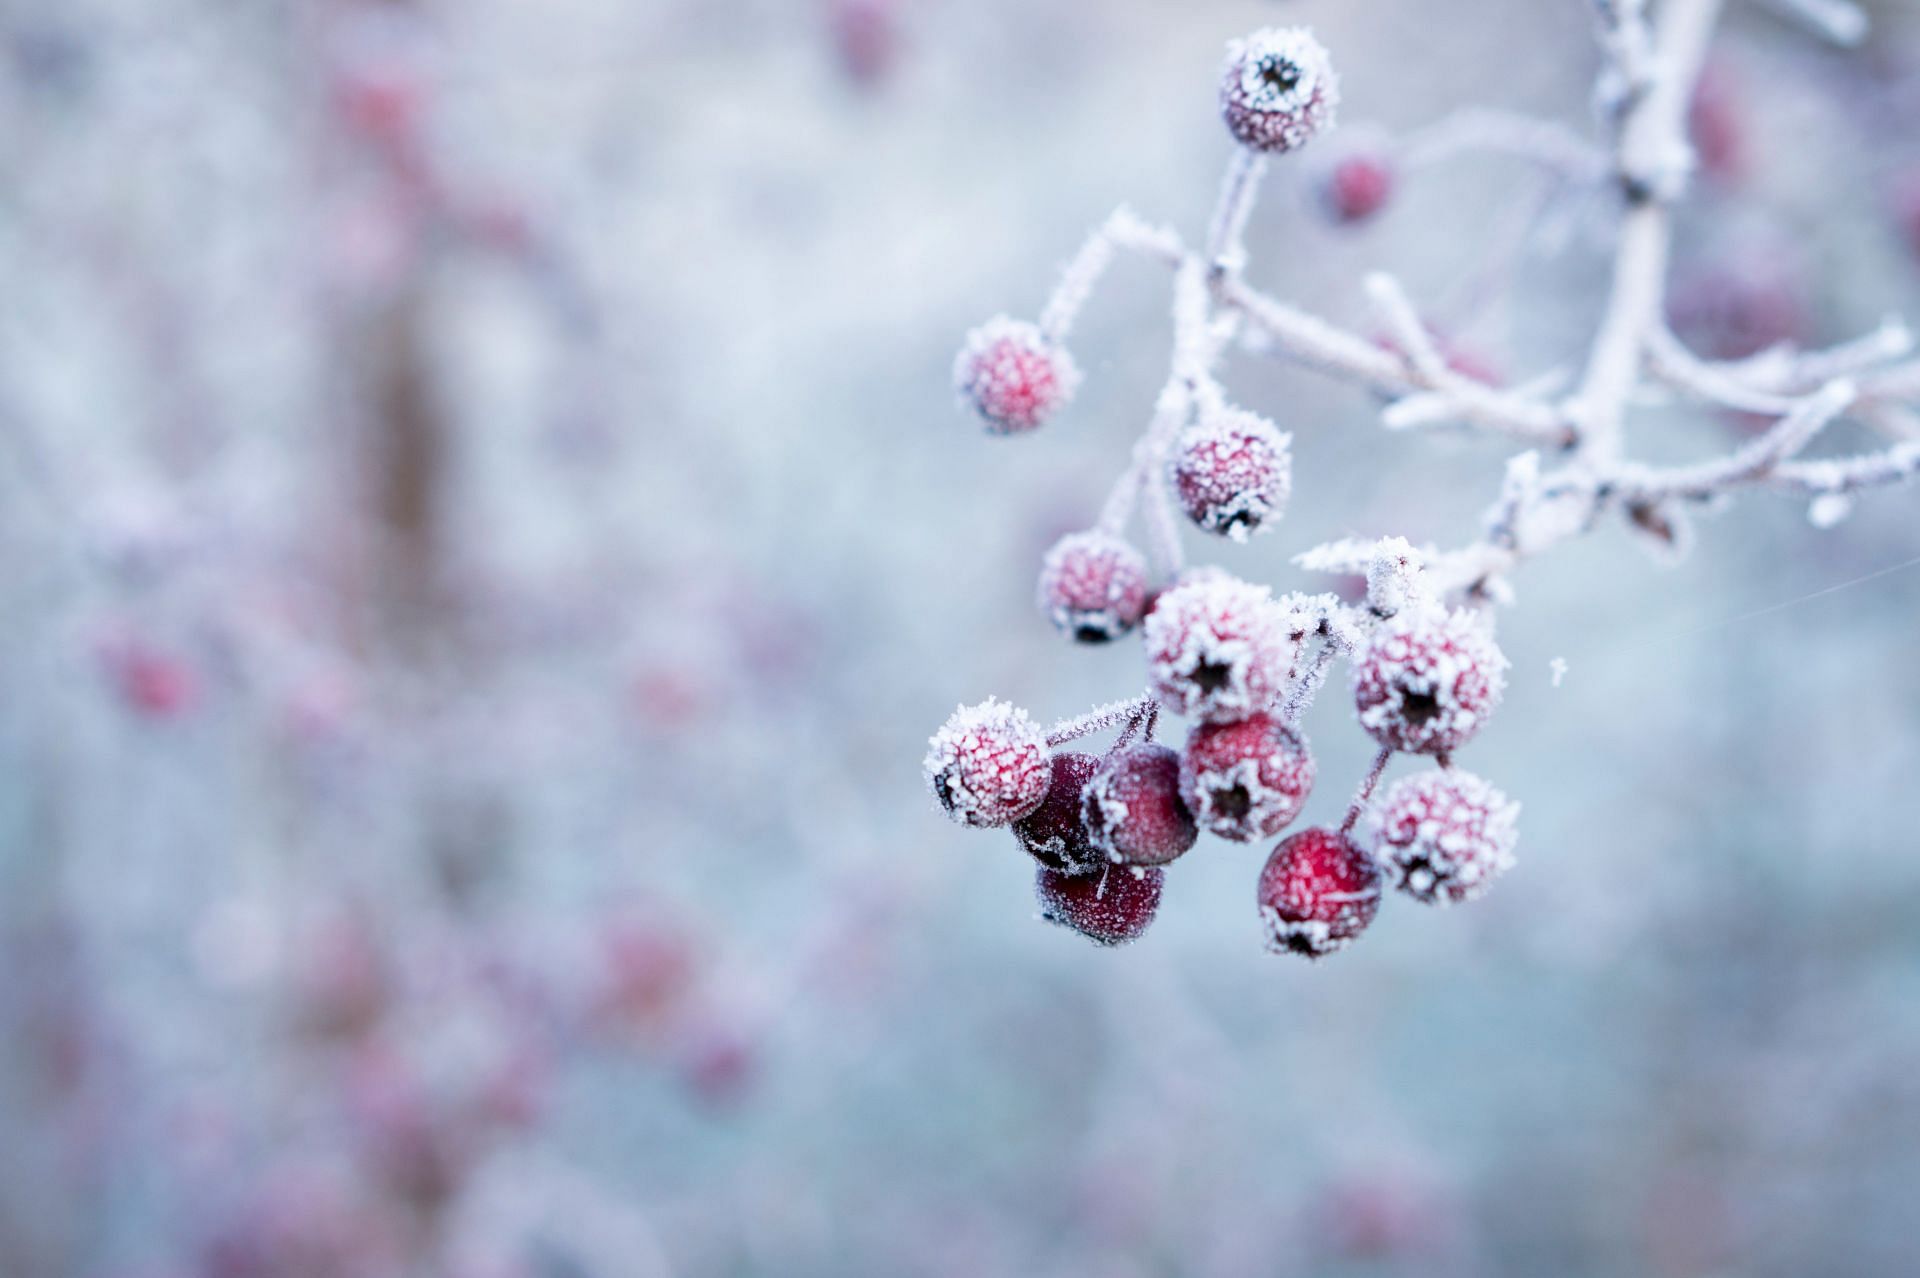 Bienestar invernal (Imagen vía Unsplash/Galina N)